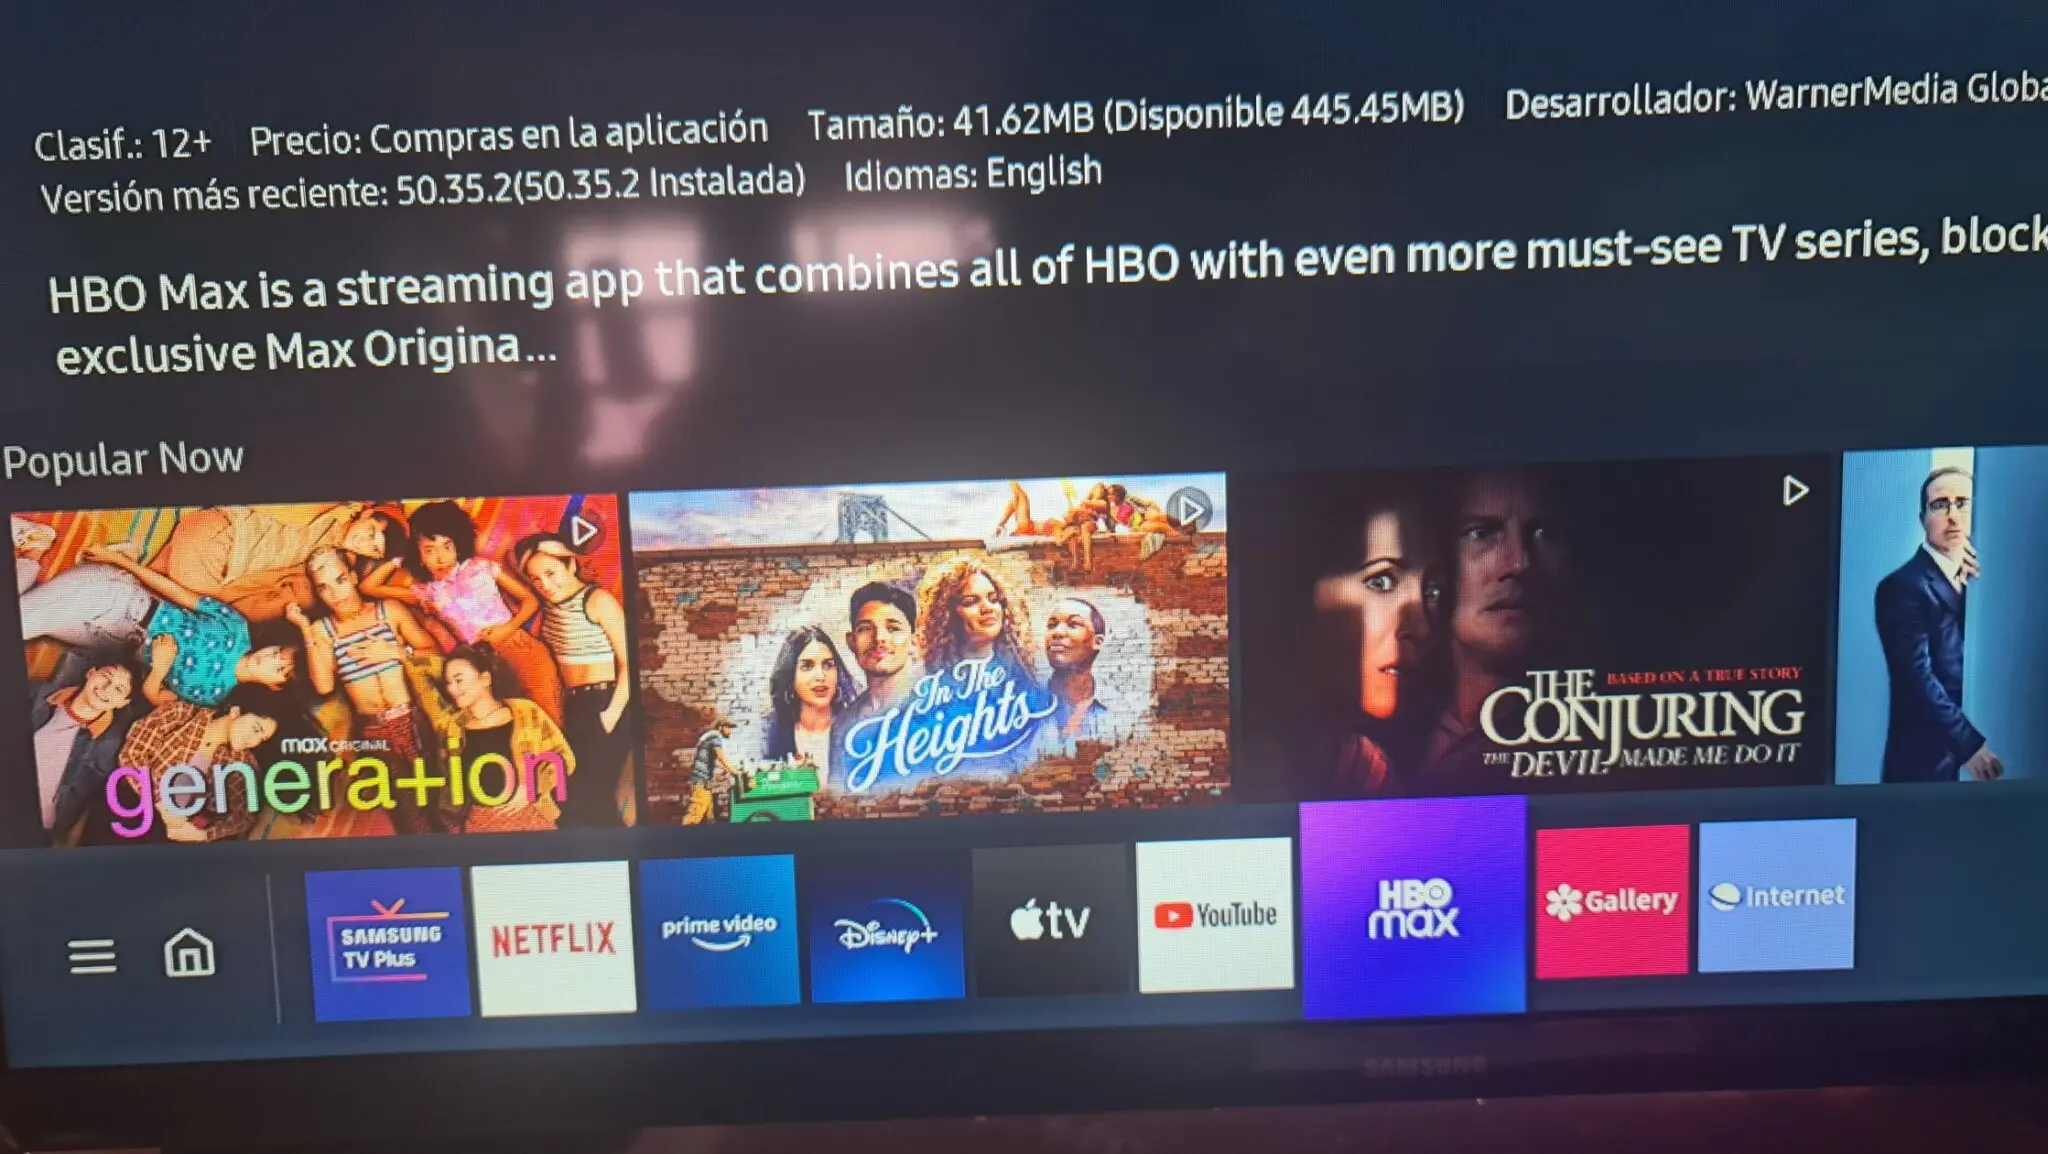 HBO Max a $49.50 MXN por lanzamiento en México | PasionMovil